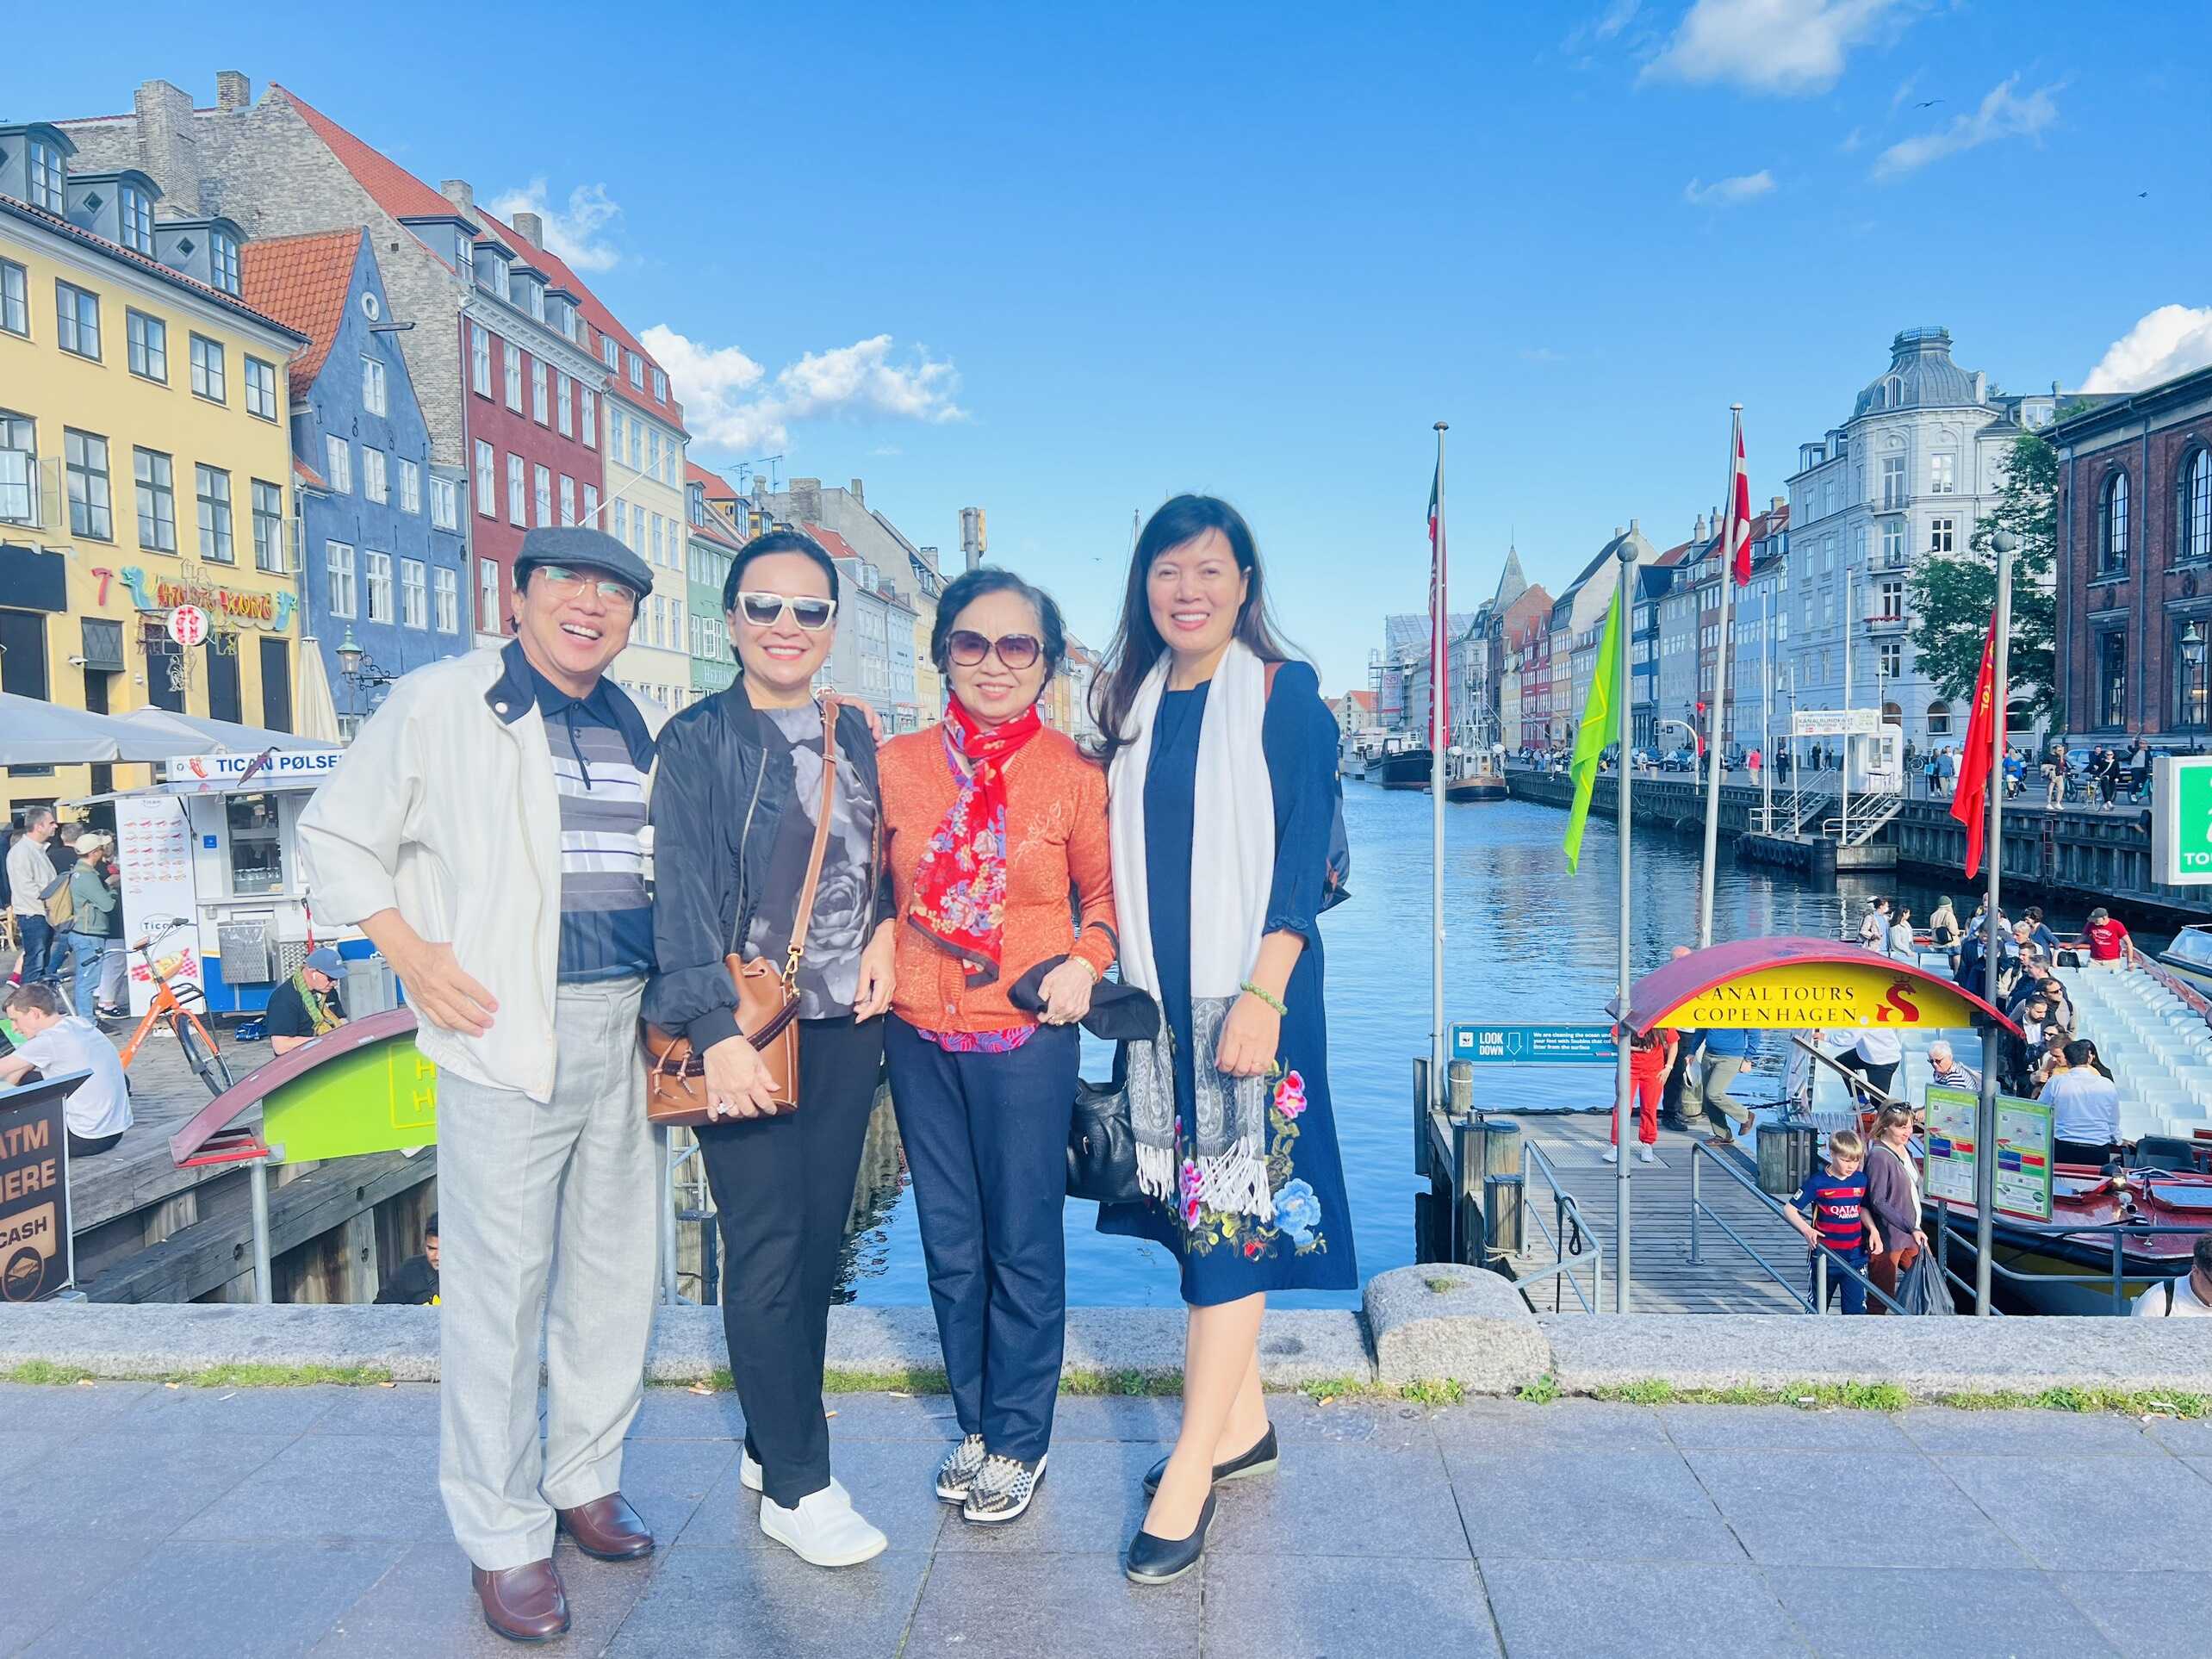 Du khách Pattours chụp hình tại bến tàu kênh đào Nyhavn